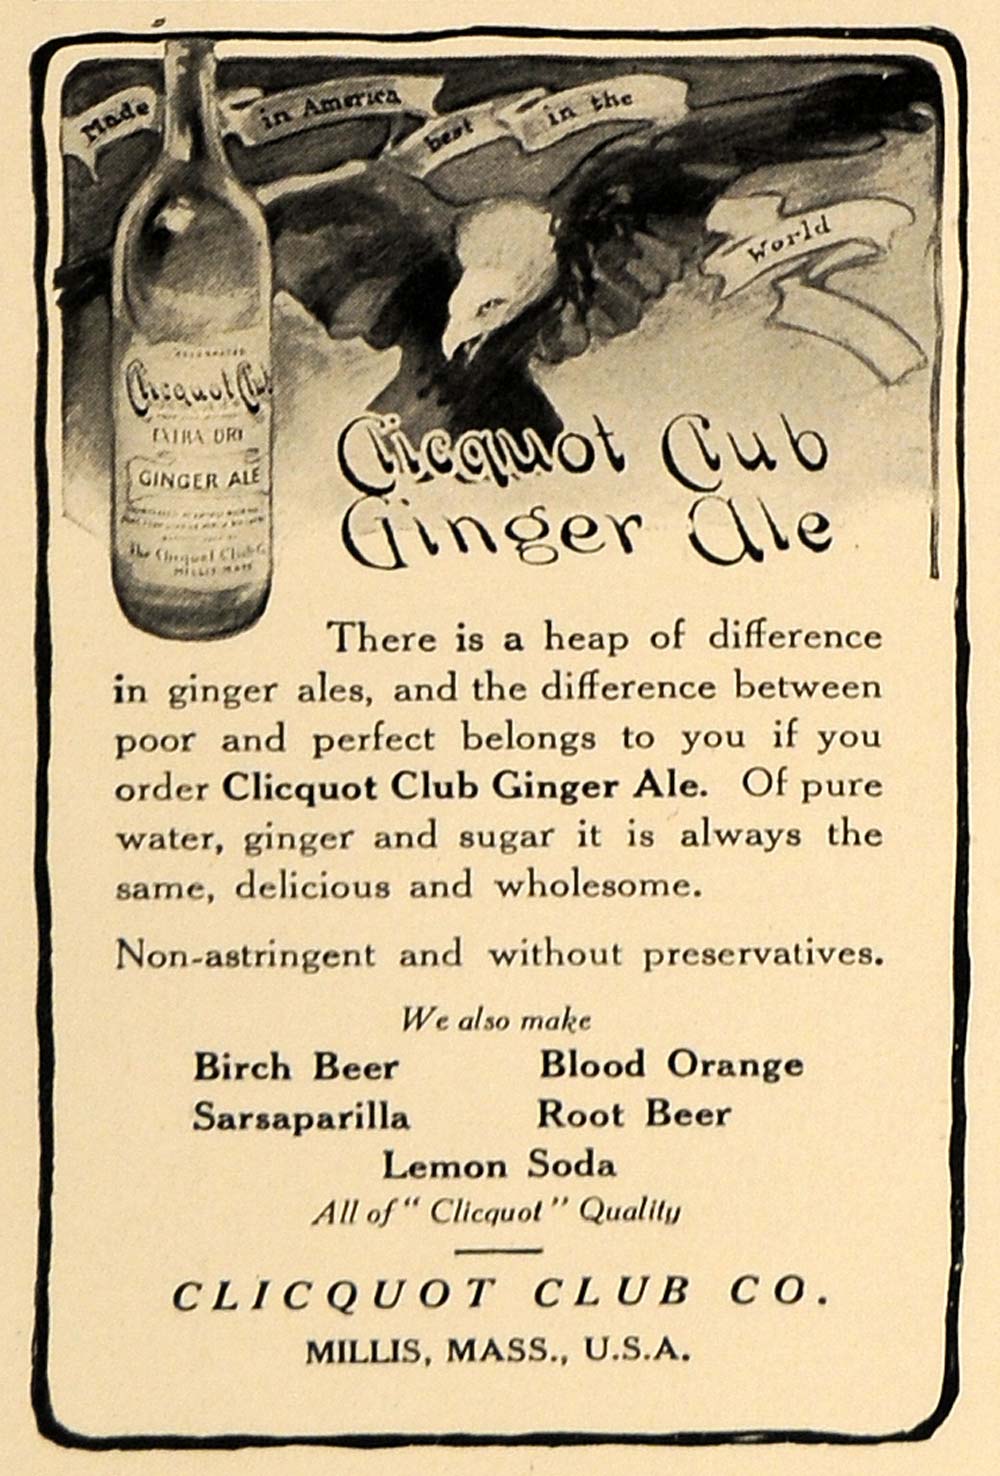 1909 Ad Eagle America Clicquot Club Ginger Ale Beverage - ORIGINAL CL8